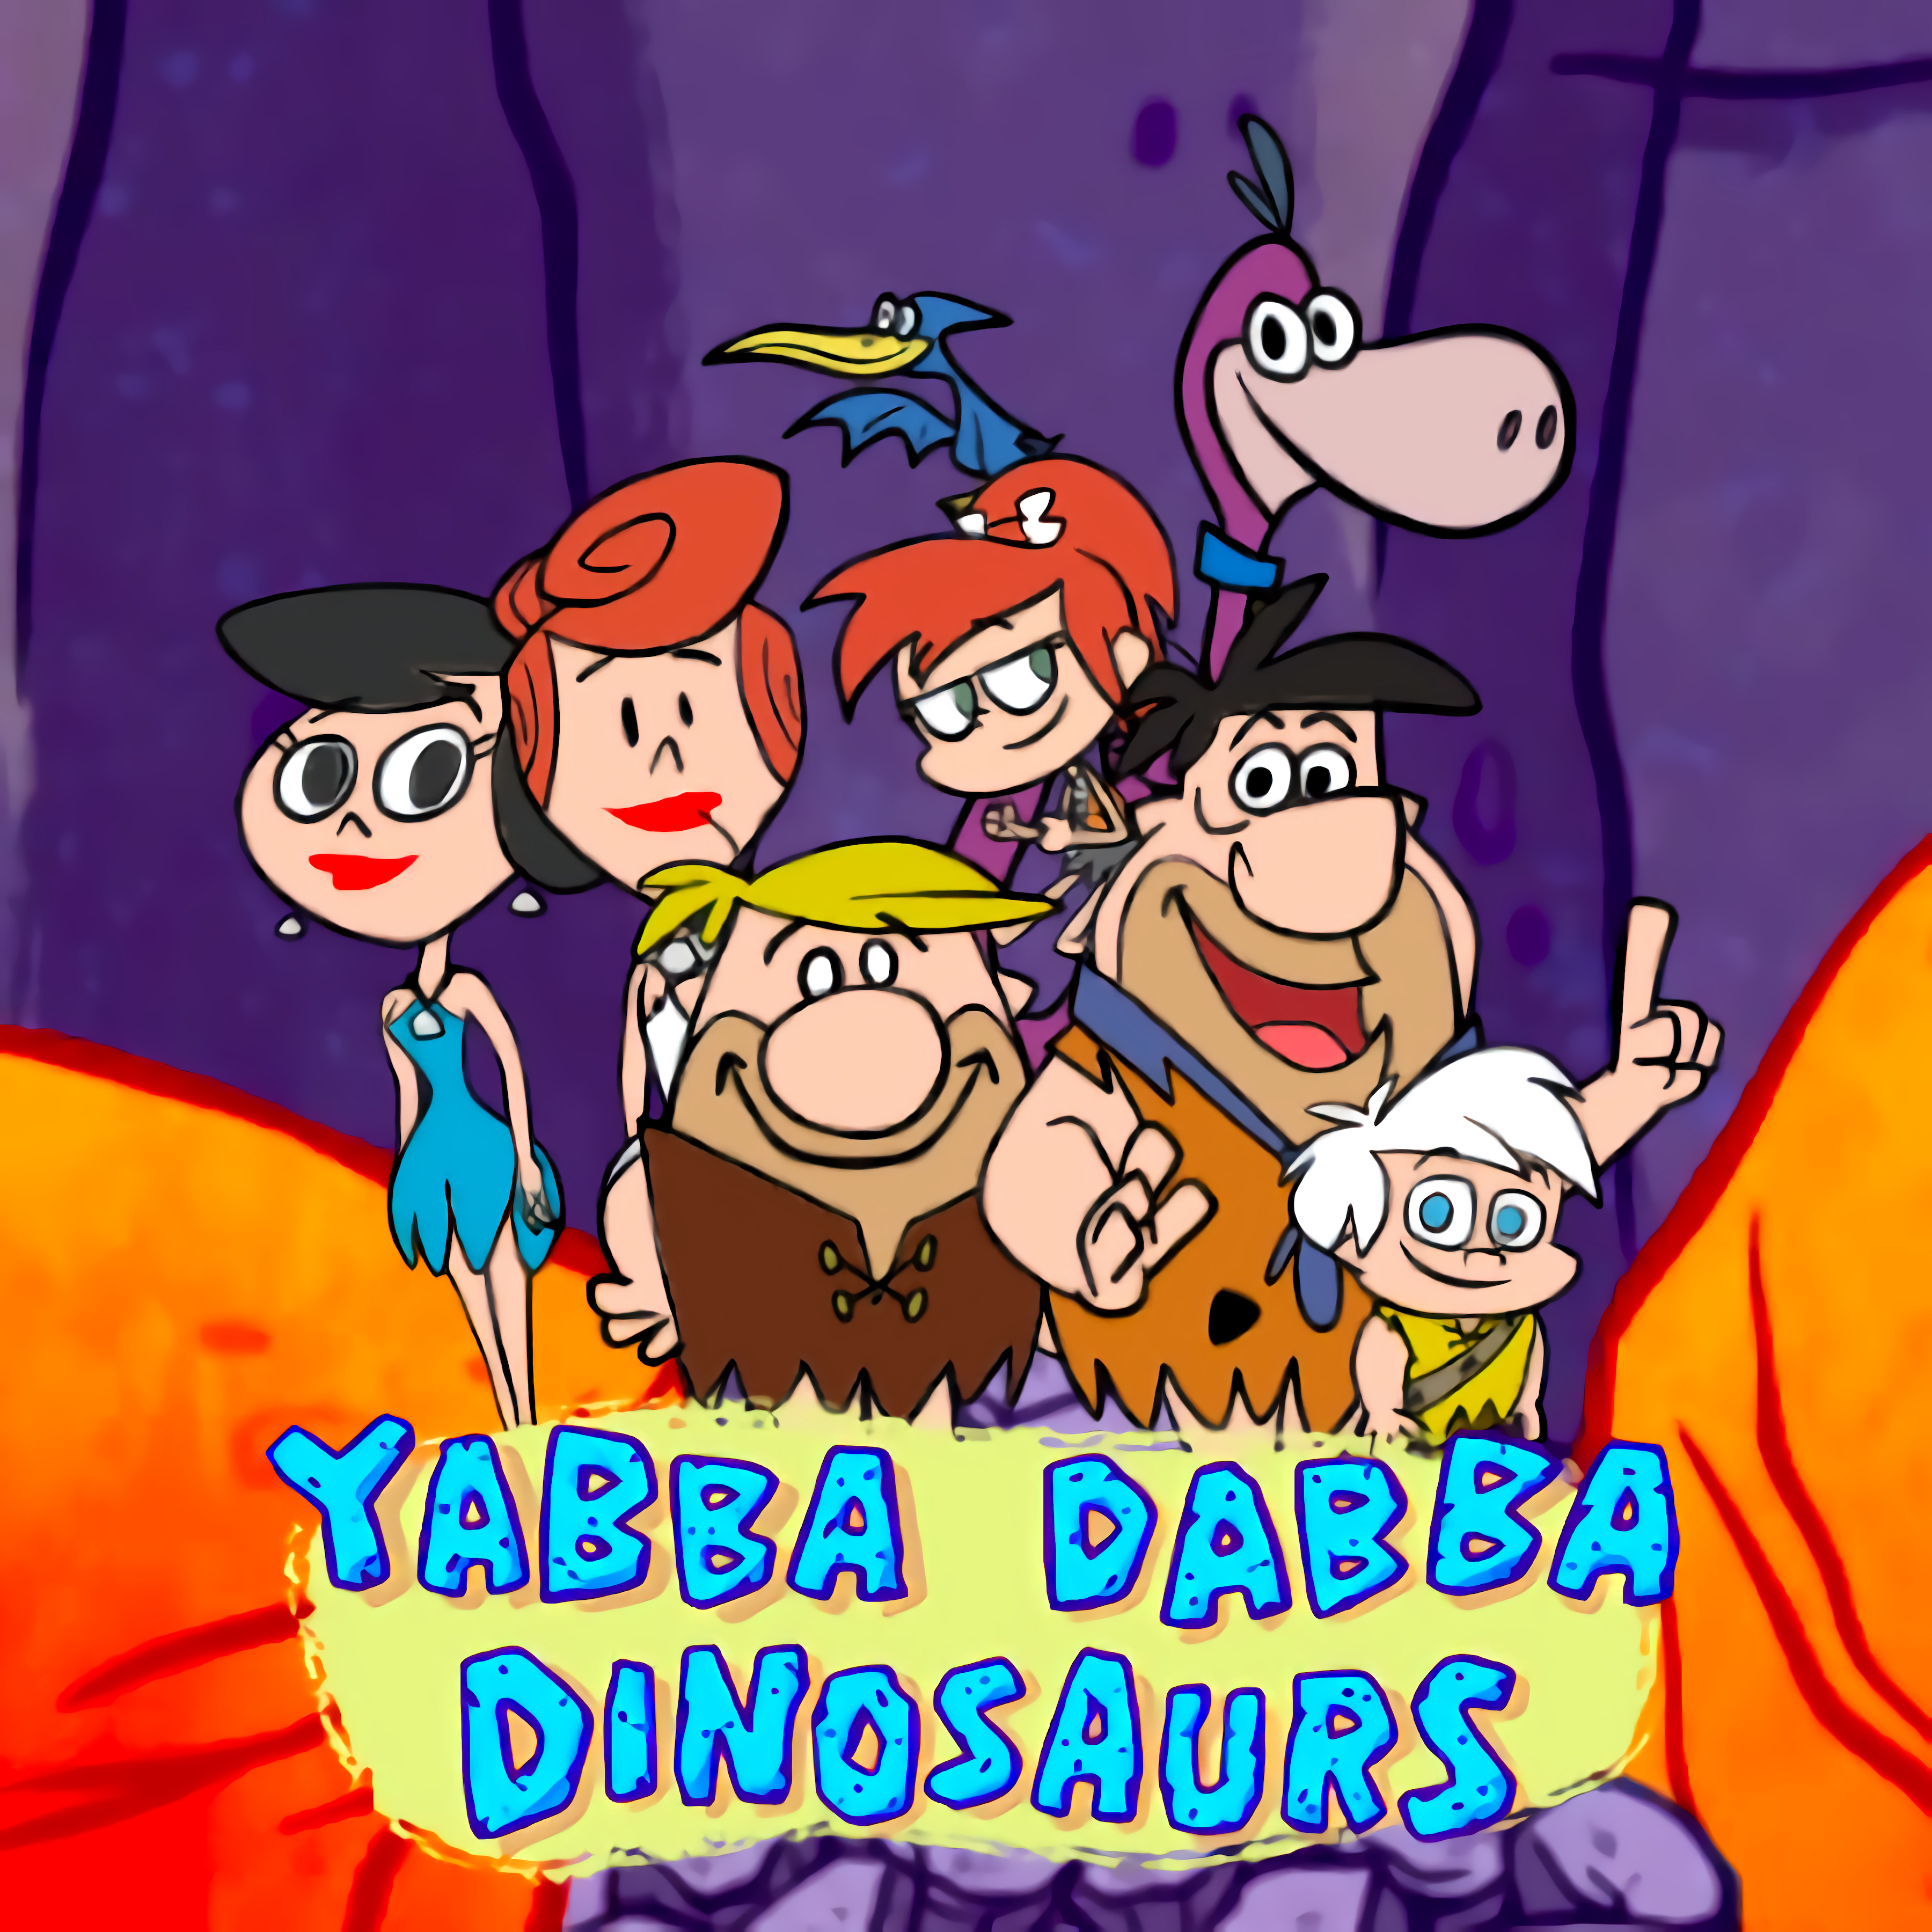 Yabba Dabba-Dinosaurs: Matching Pairs